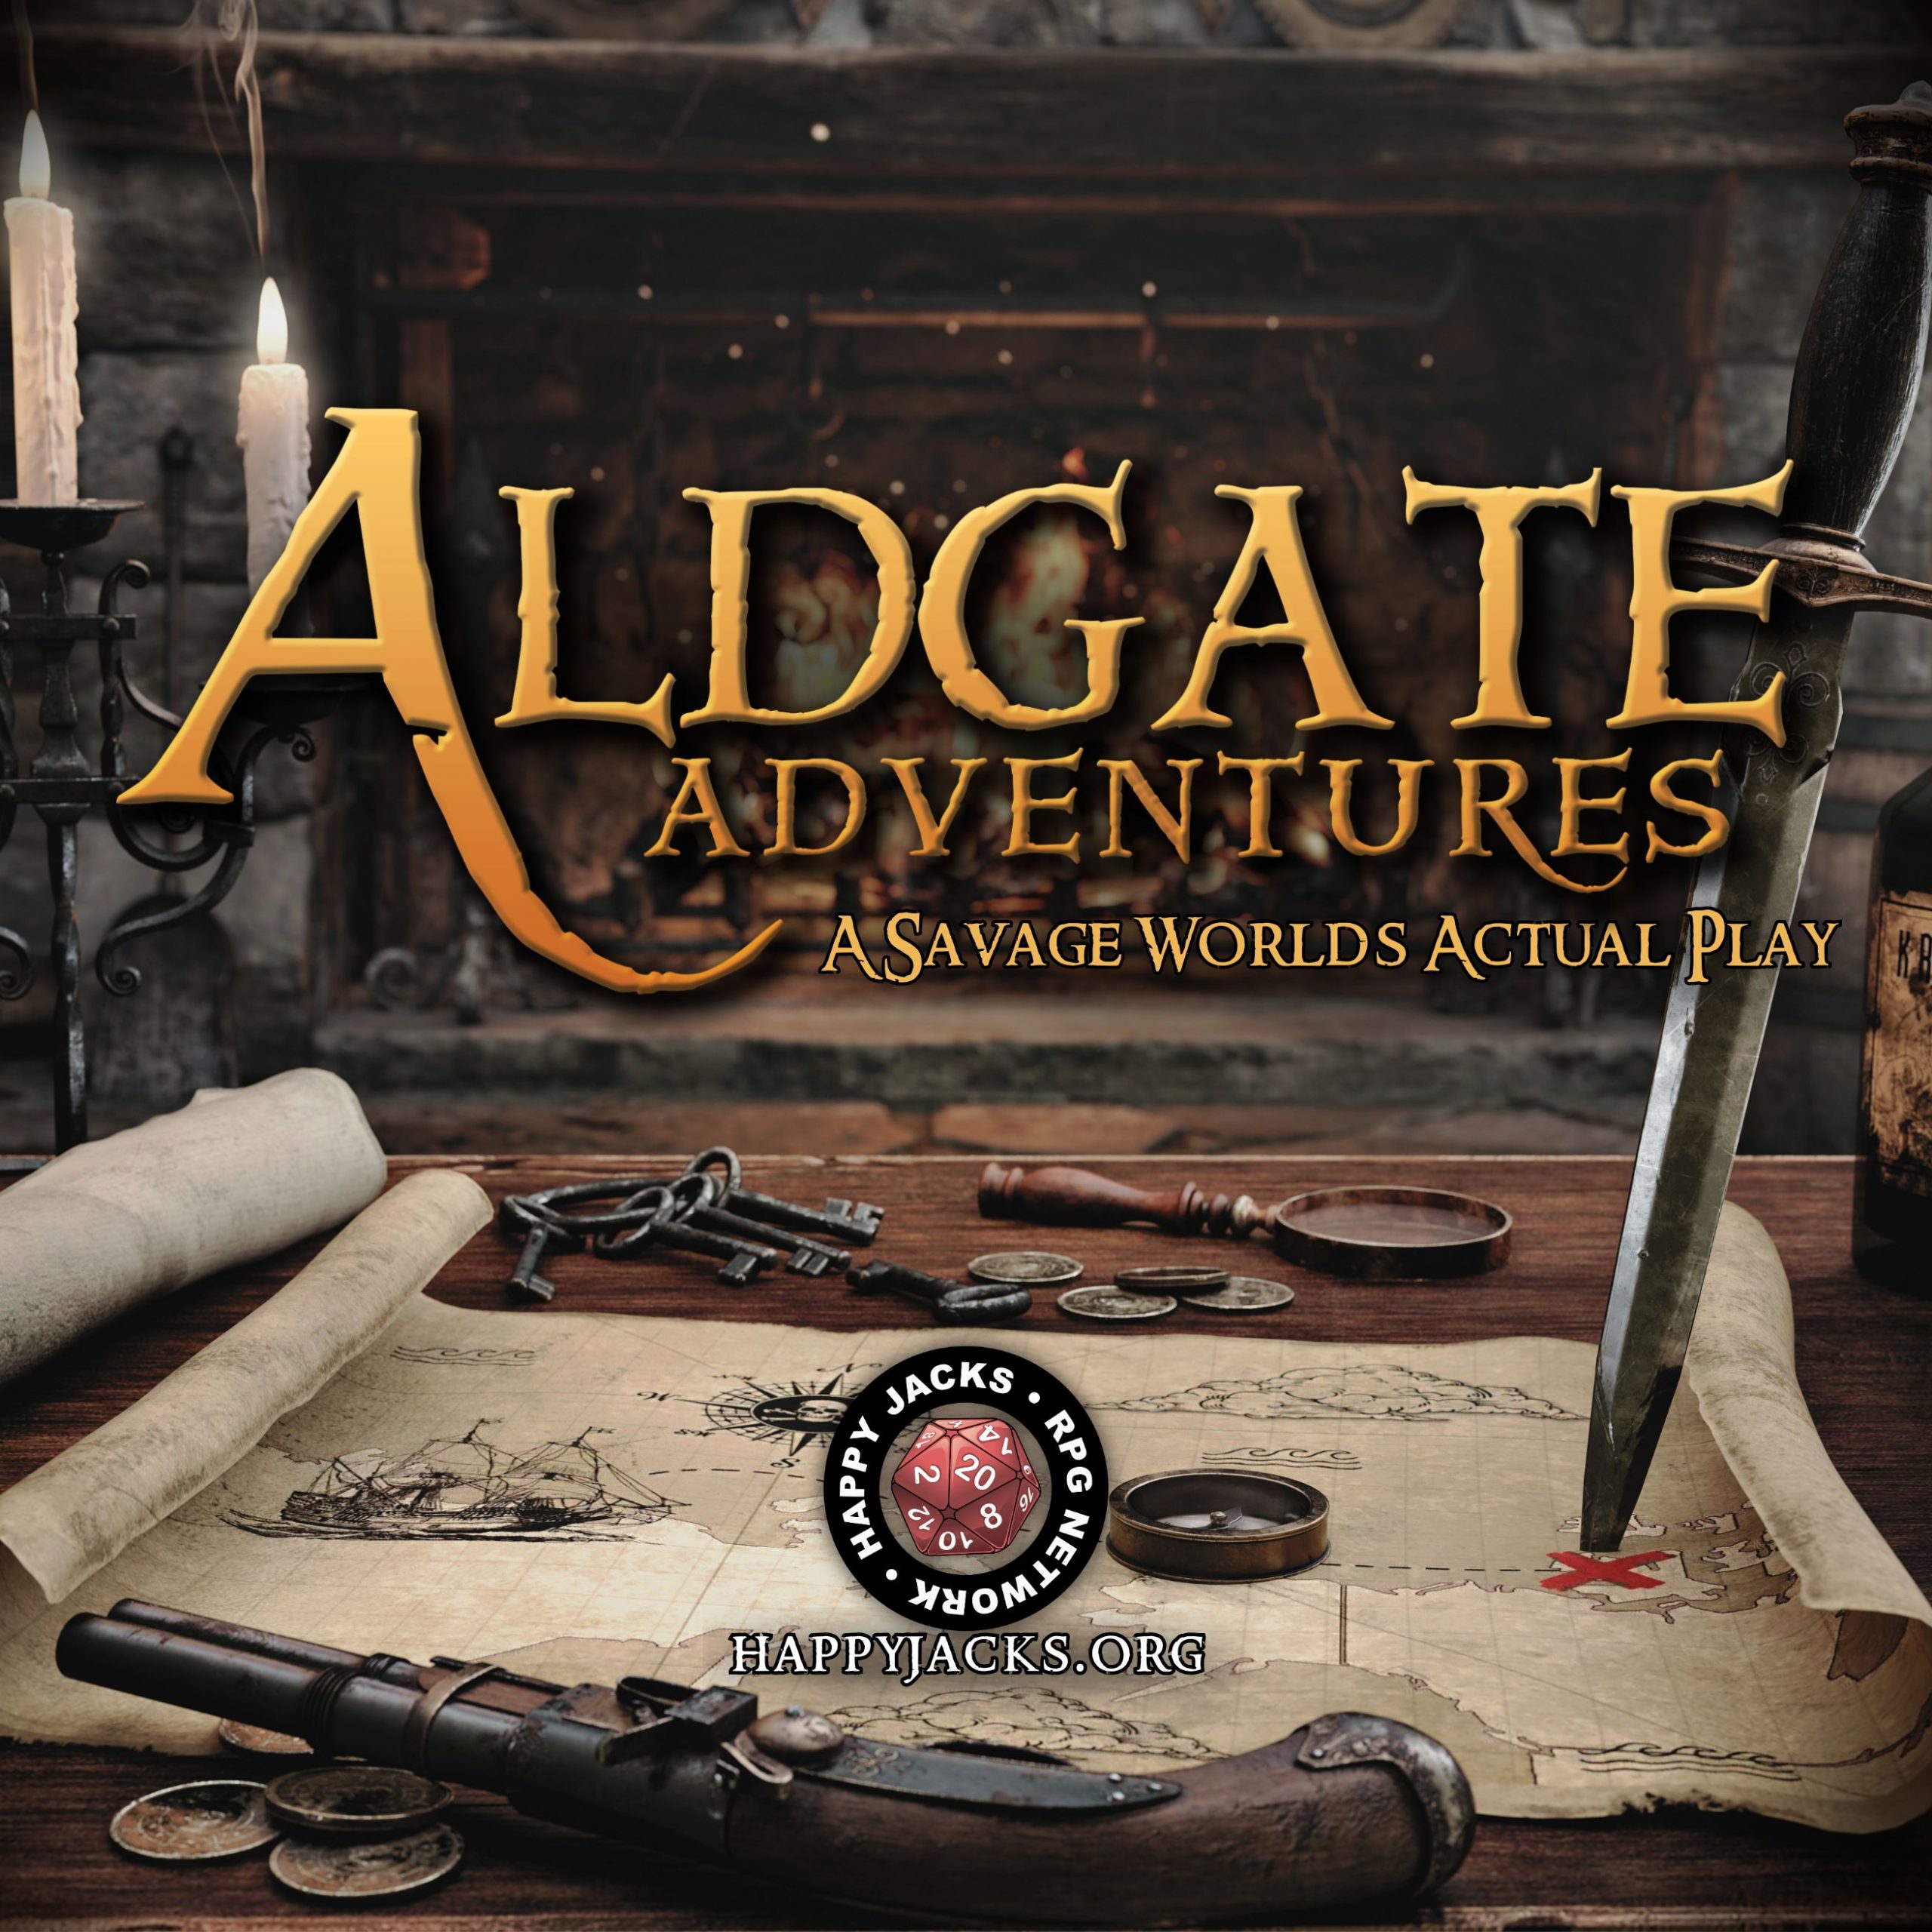 ALDGATE04 Memories in the Dark | Aldgate Adventures | Savage Worlds